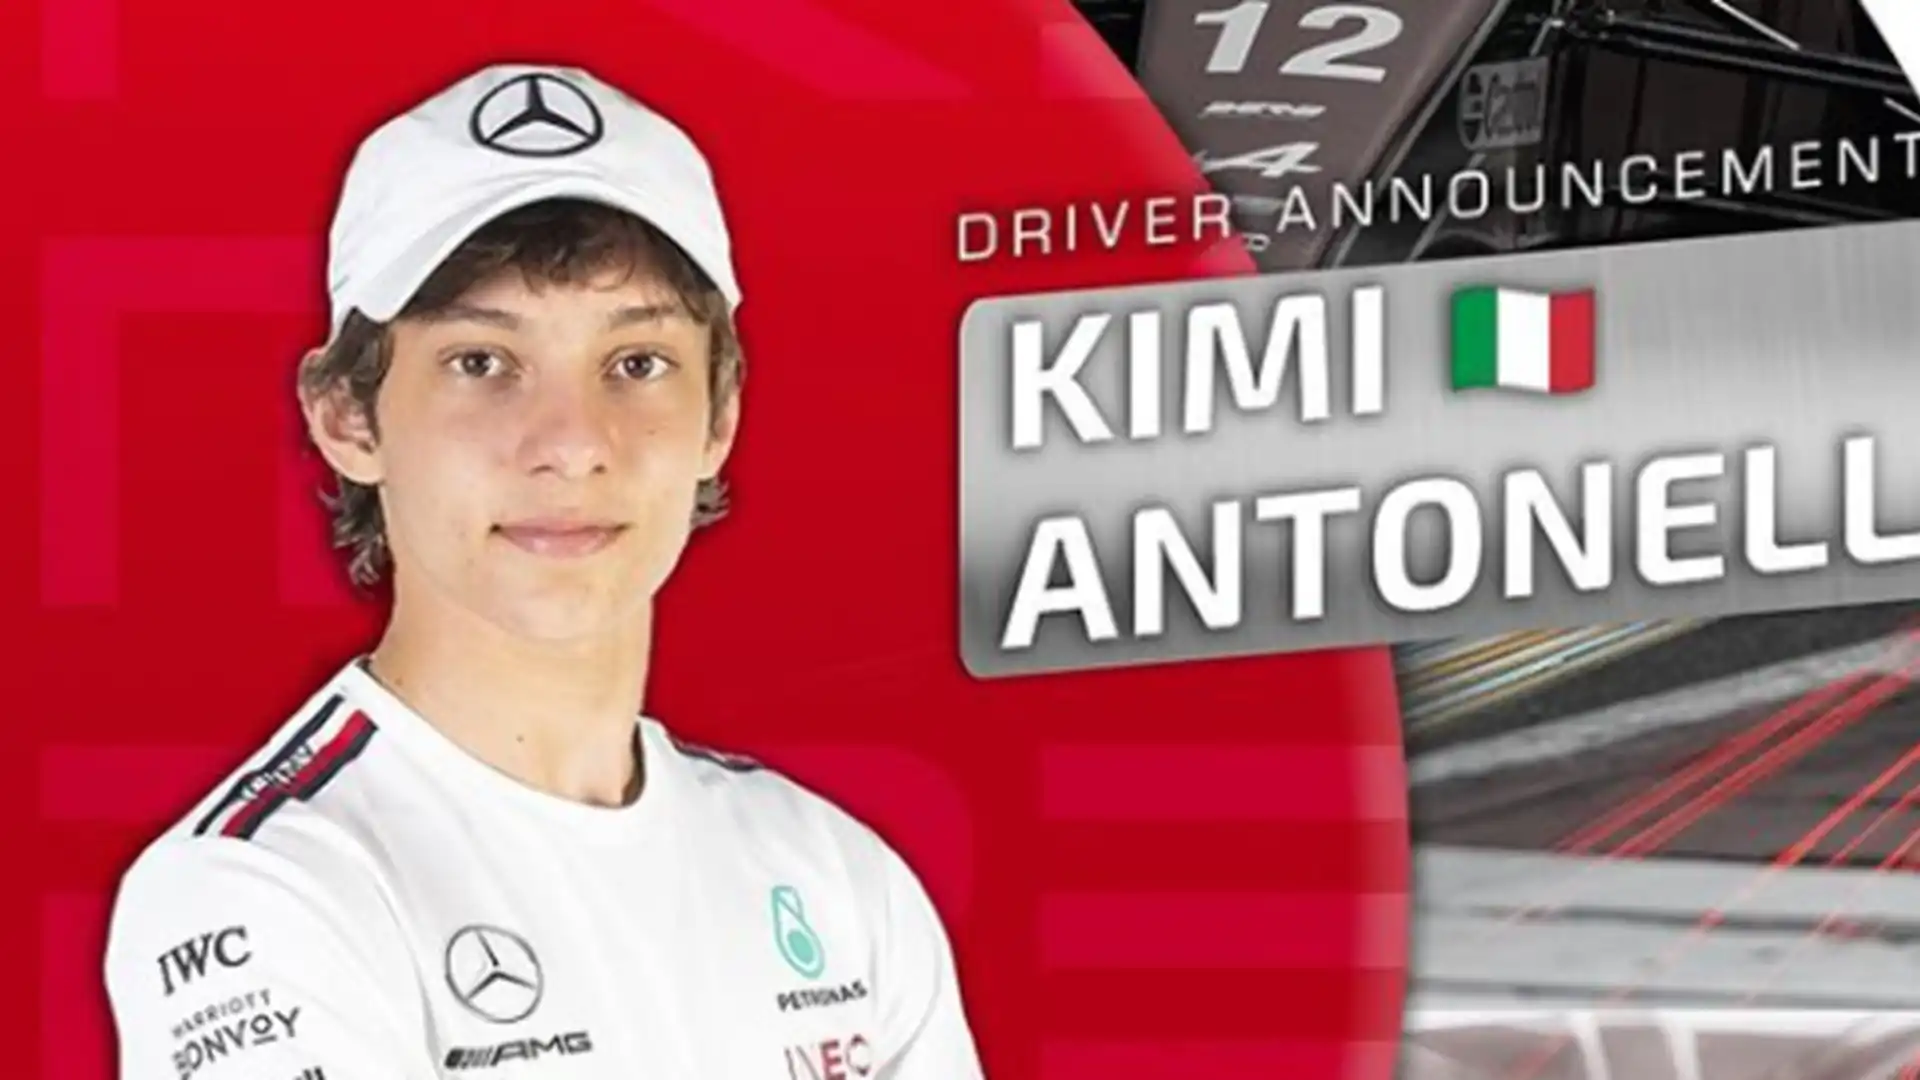 Andrea Kimi Antonelli: ad appena 17 anni il pilota italiano è già una star in casa Mercedes, ma ha bisogno di tempo ed esperienza in F2 prima di esordire nella classe regina